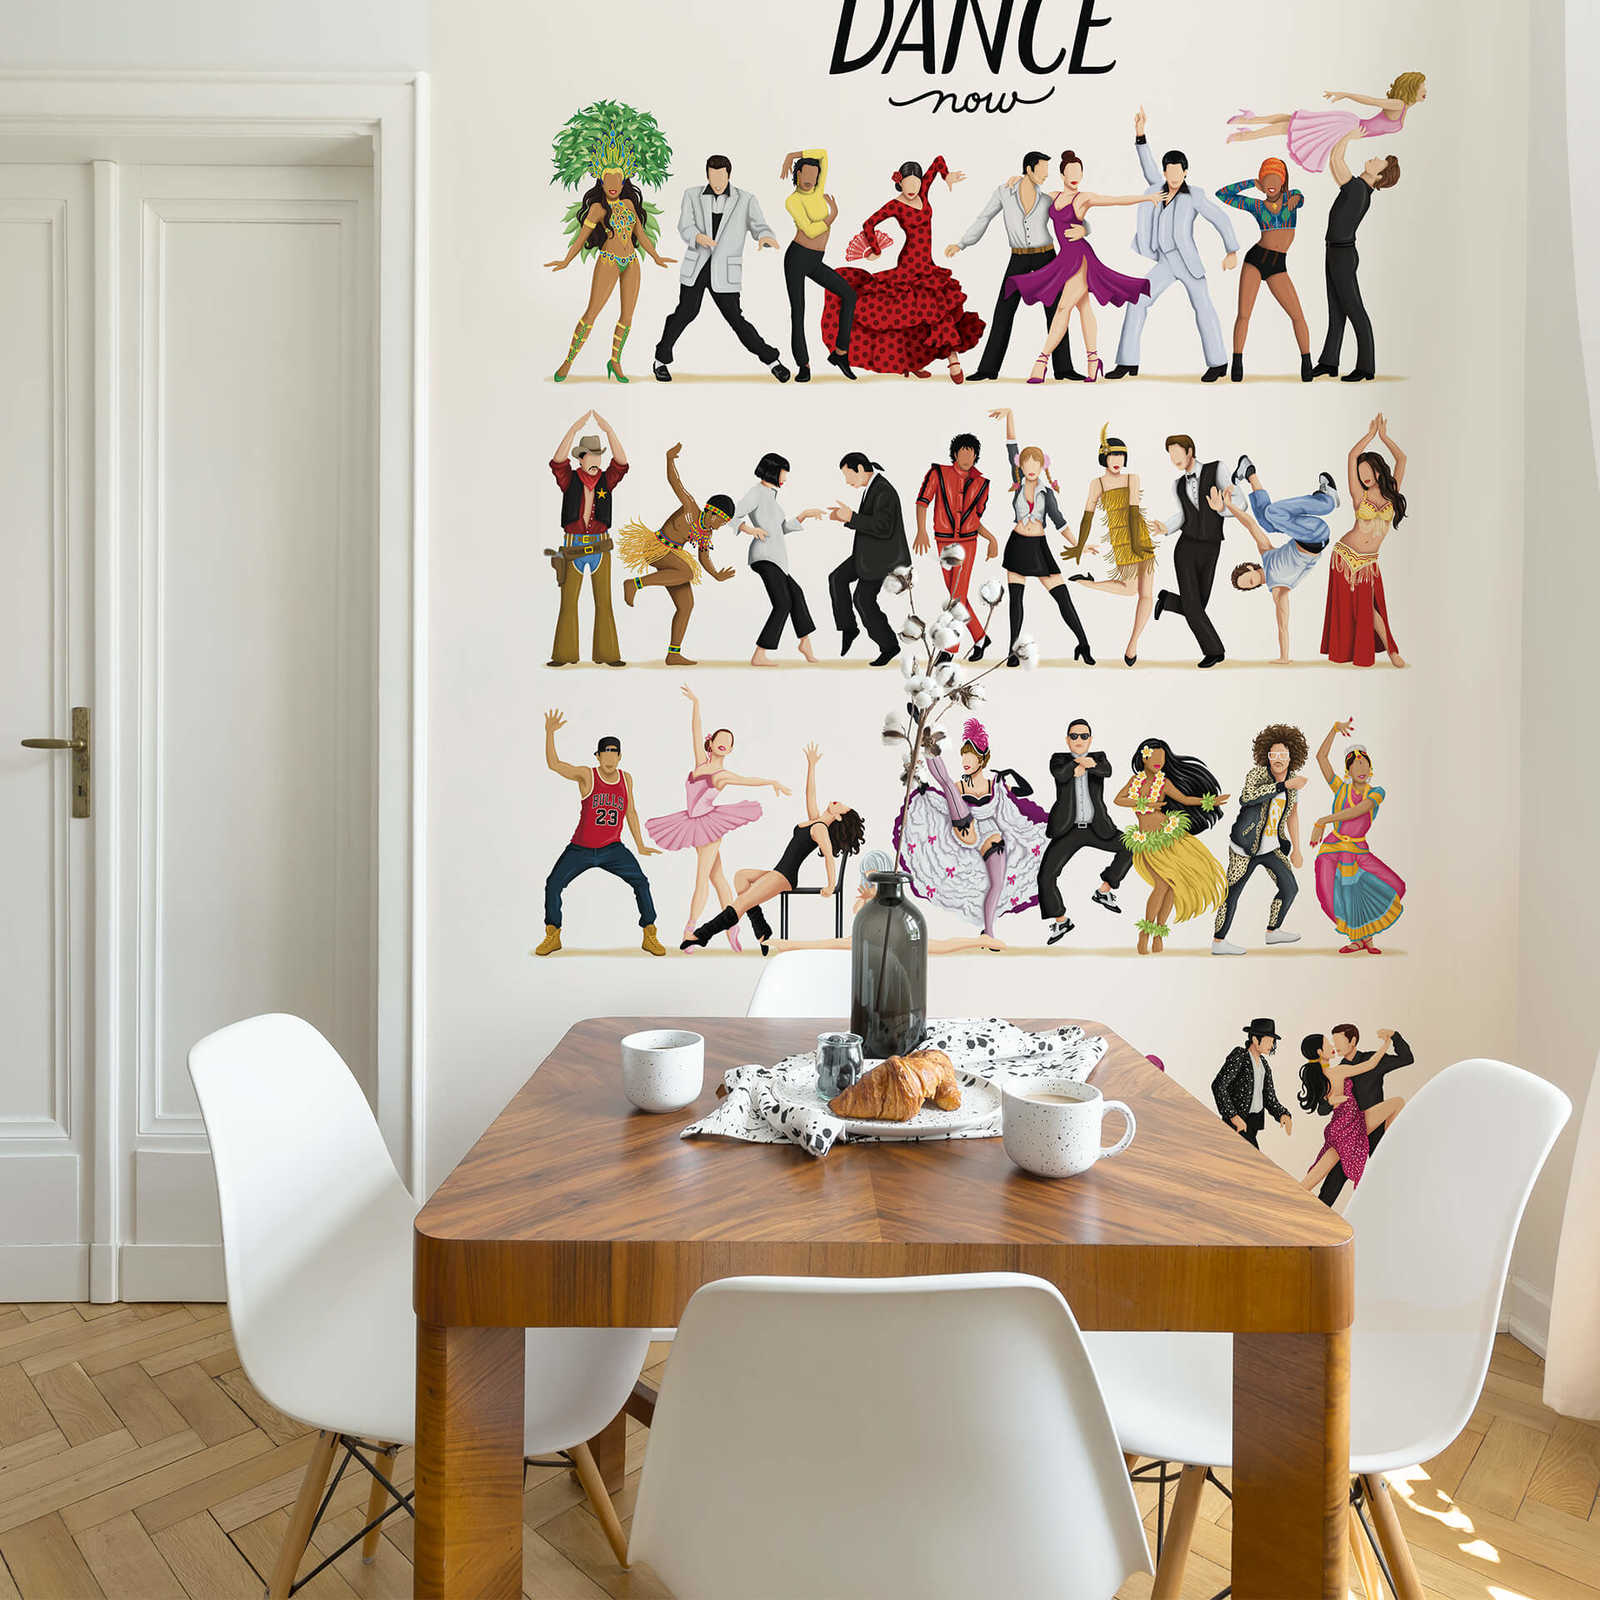             Mural de gente bailando dibujada
        